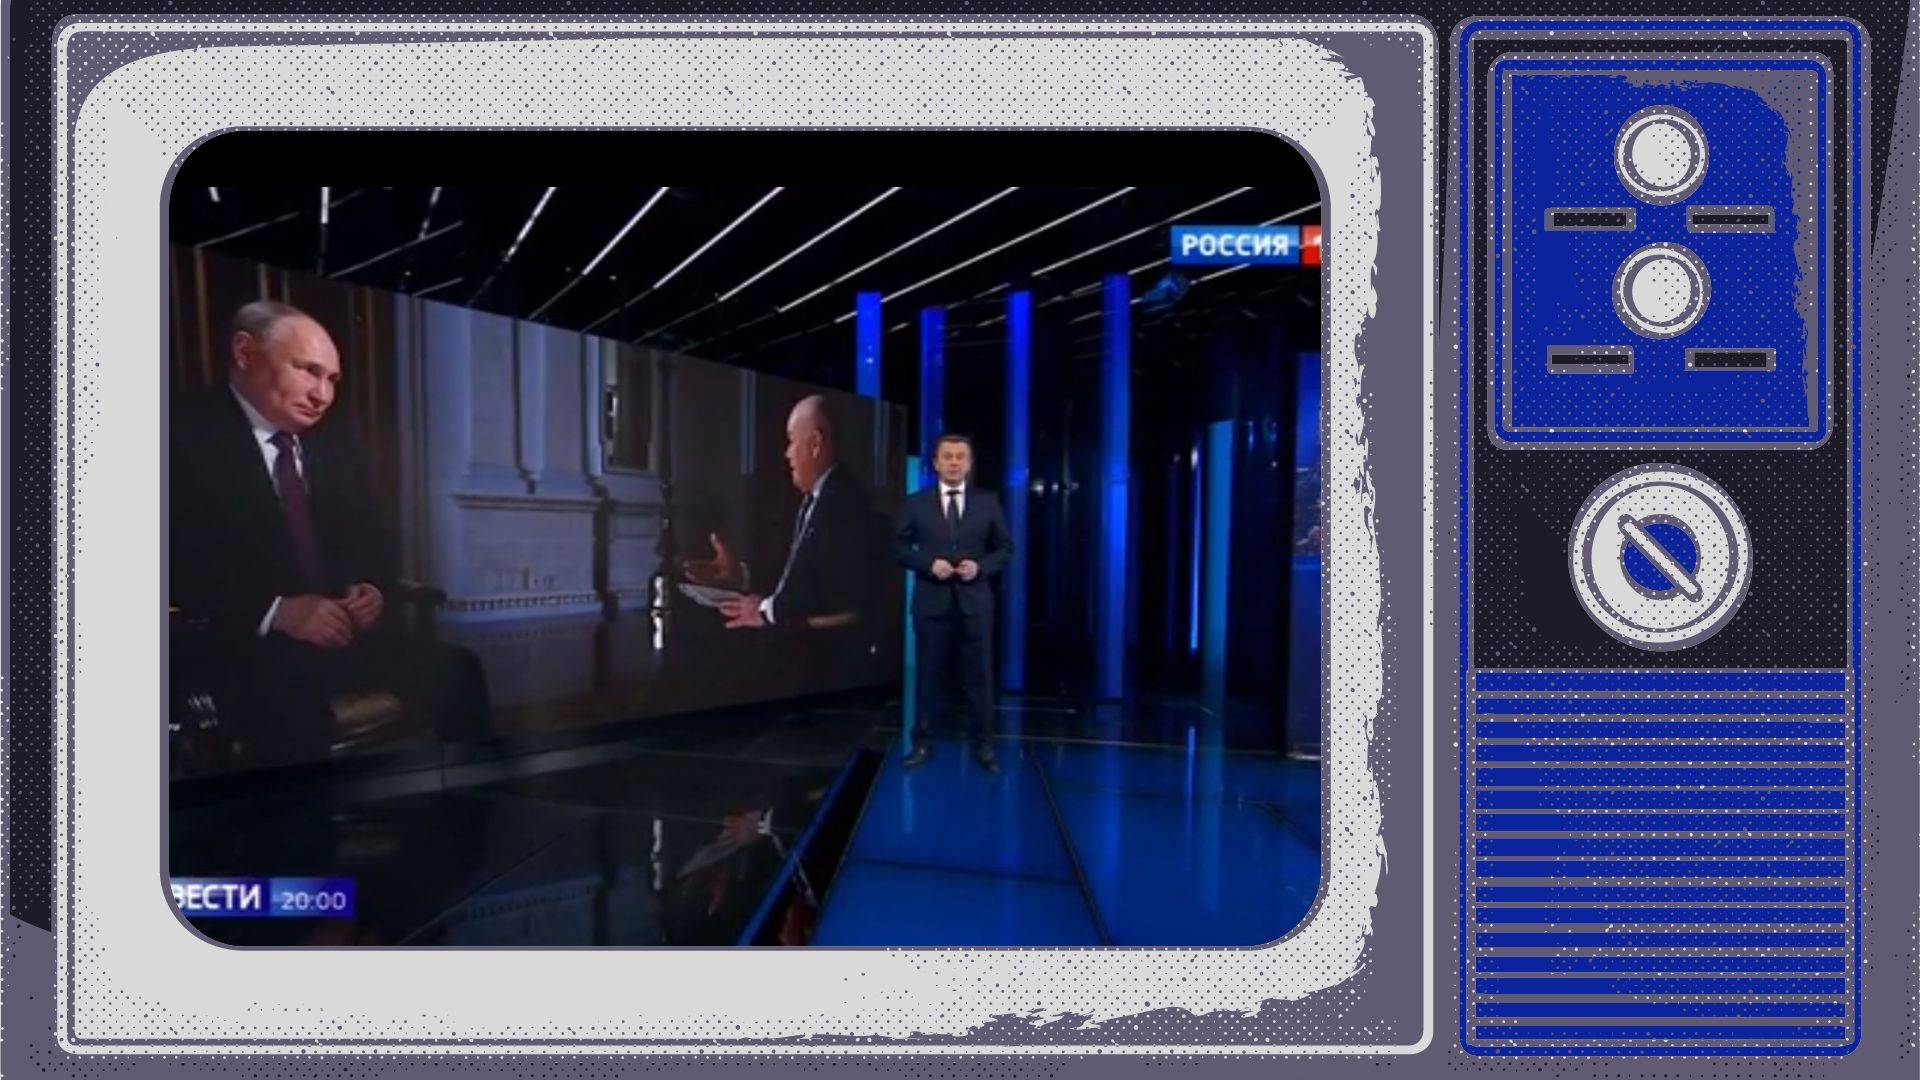 Grafika: w ramce starego telewizora kadr z programu informacyjnego. Prezenter pokazuje zdjecie Putina udzielającego wywiadu